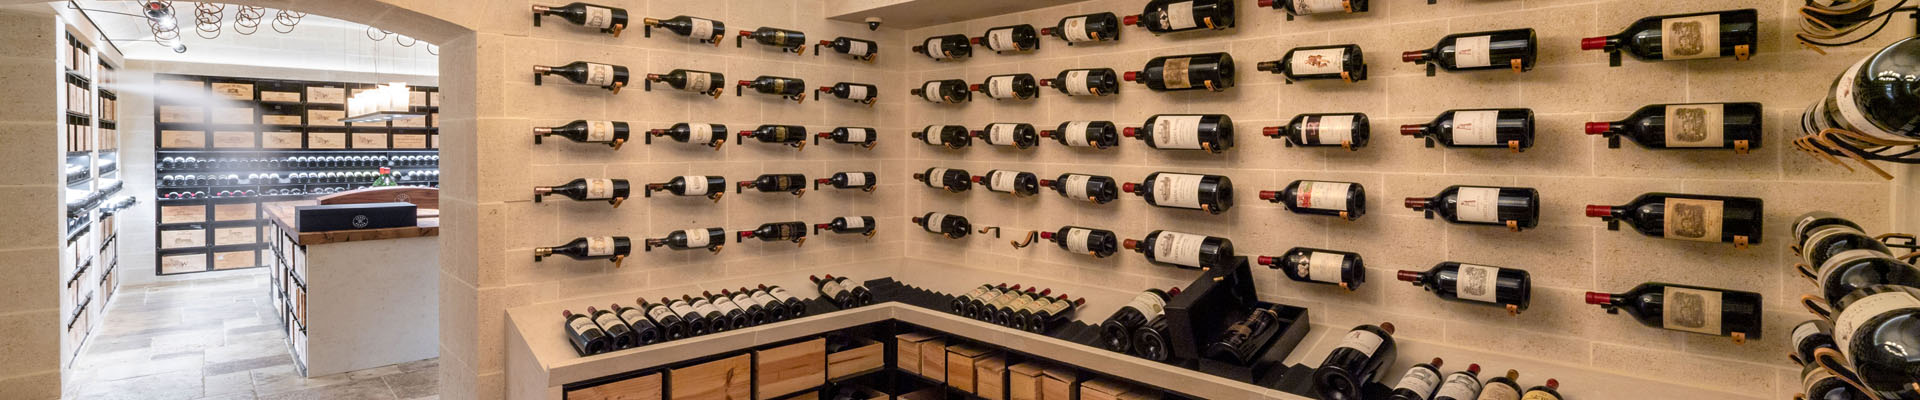 Weinkeller des Hotels Einsteins mit Flaschen an den Wänden. Unsichtbare Kühlung